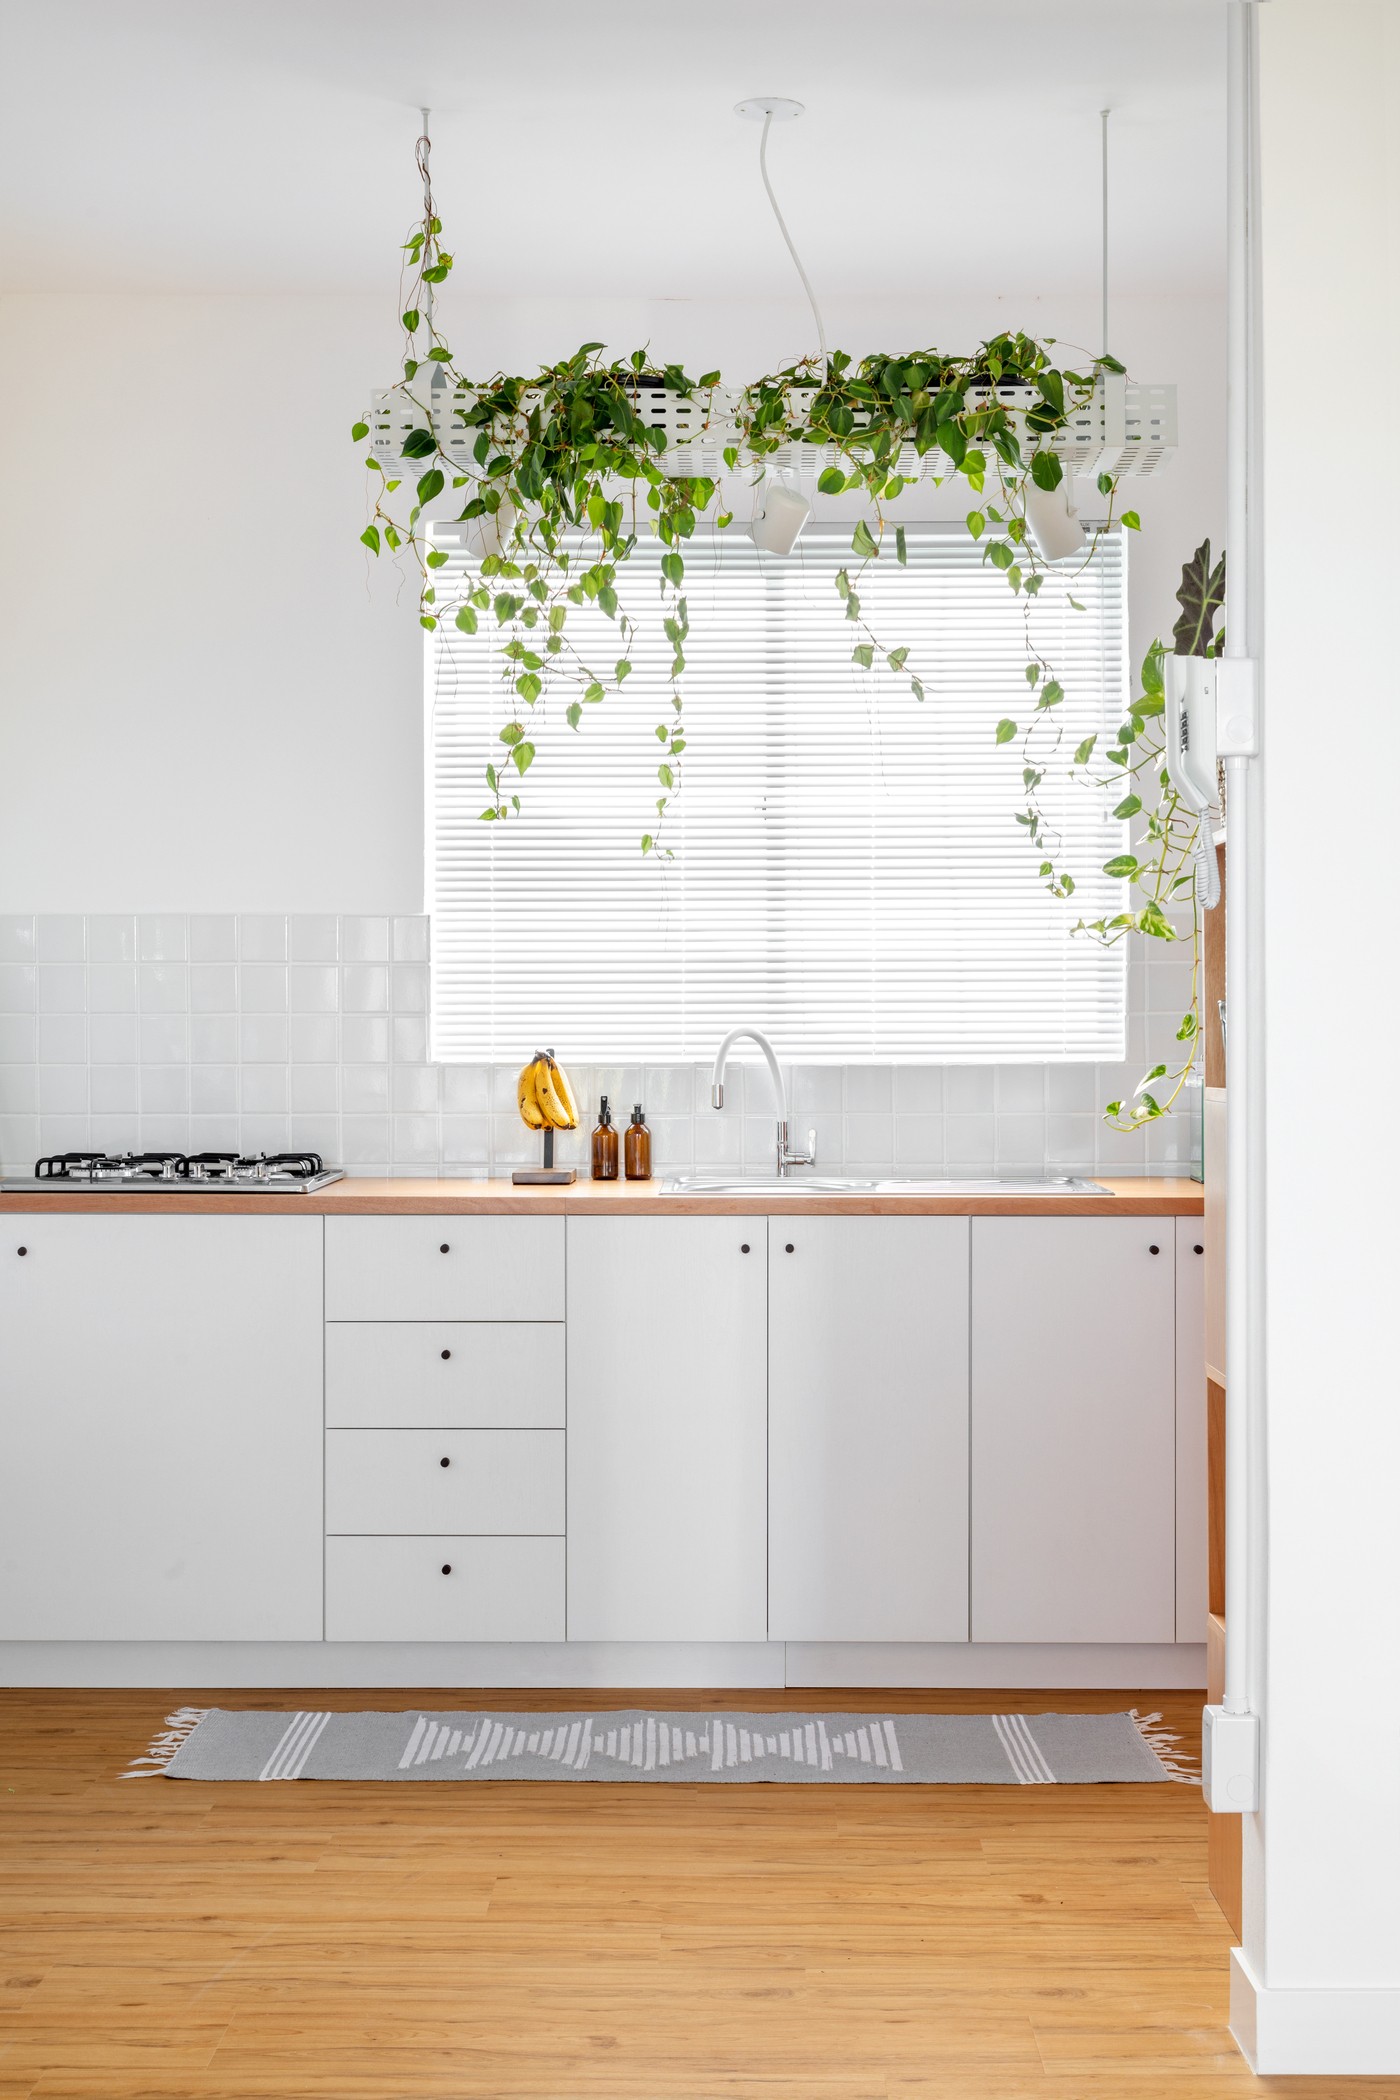 Décor do dia: cozinha branca com prateleira de plantas e ares minimalistas (Foto: Fabio Jr. Severo)